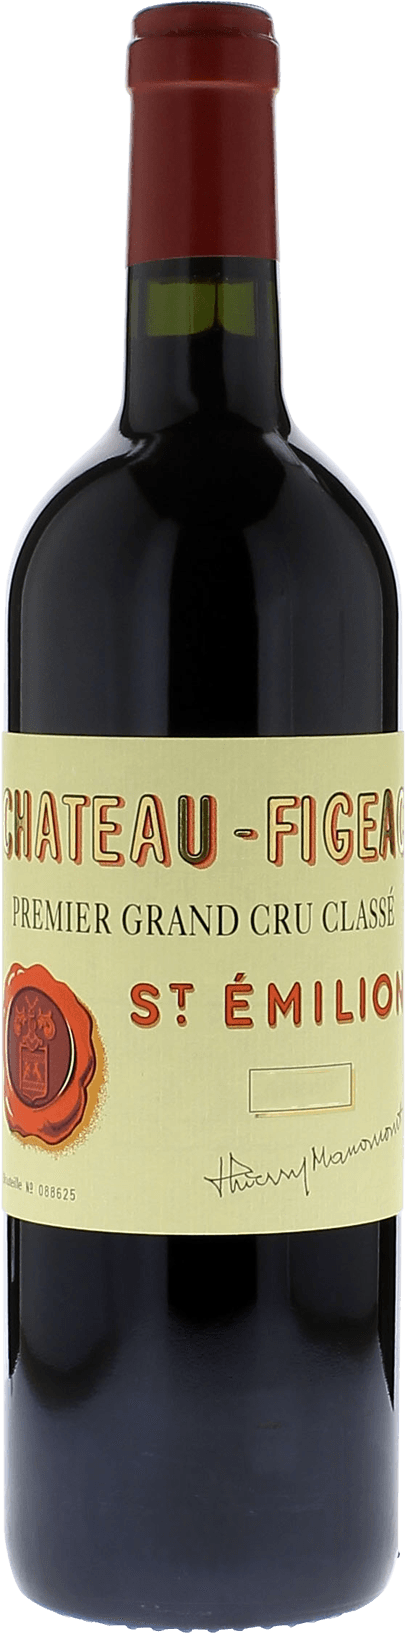 Figeac 2000 1er Grand cru class Saint-Emilion, Bordeaux rouge